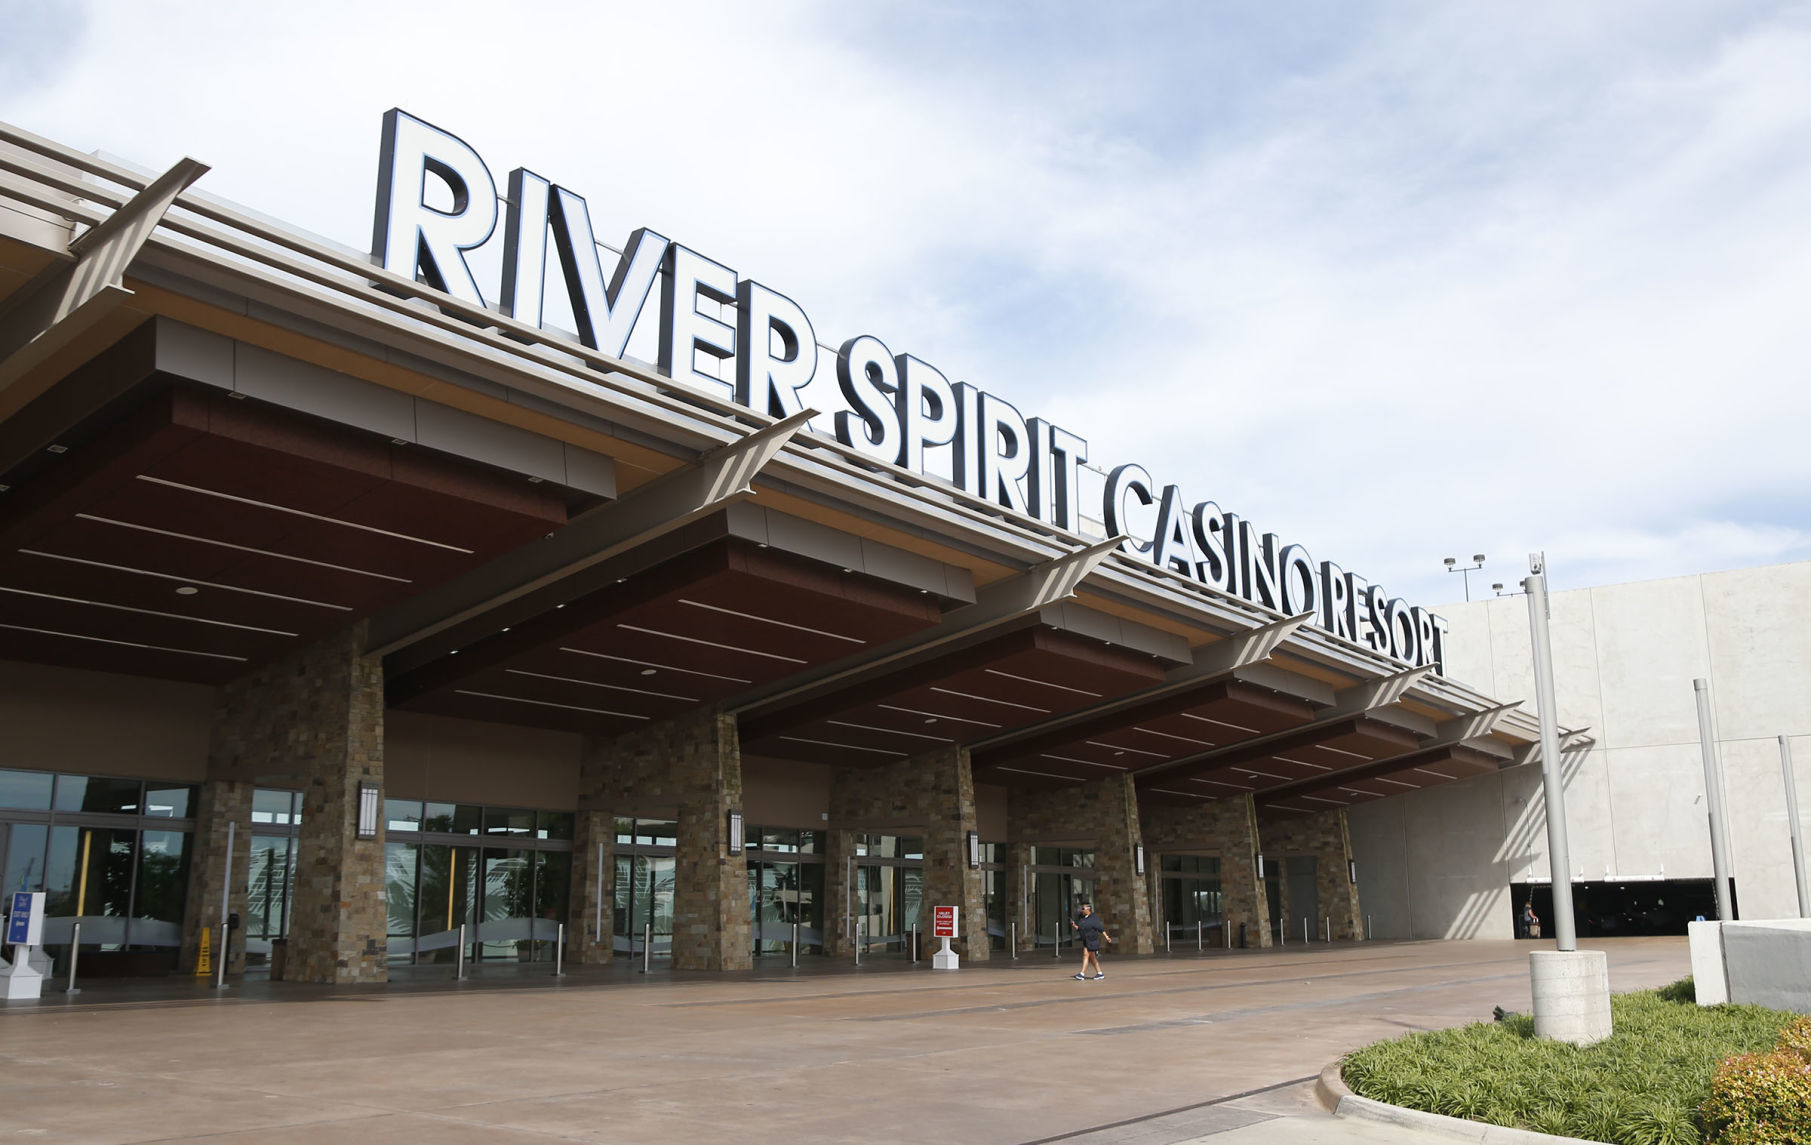 river spirit casino closed